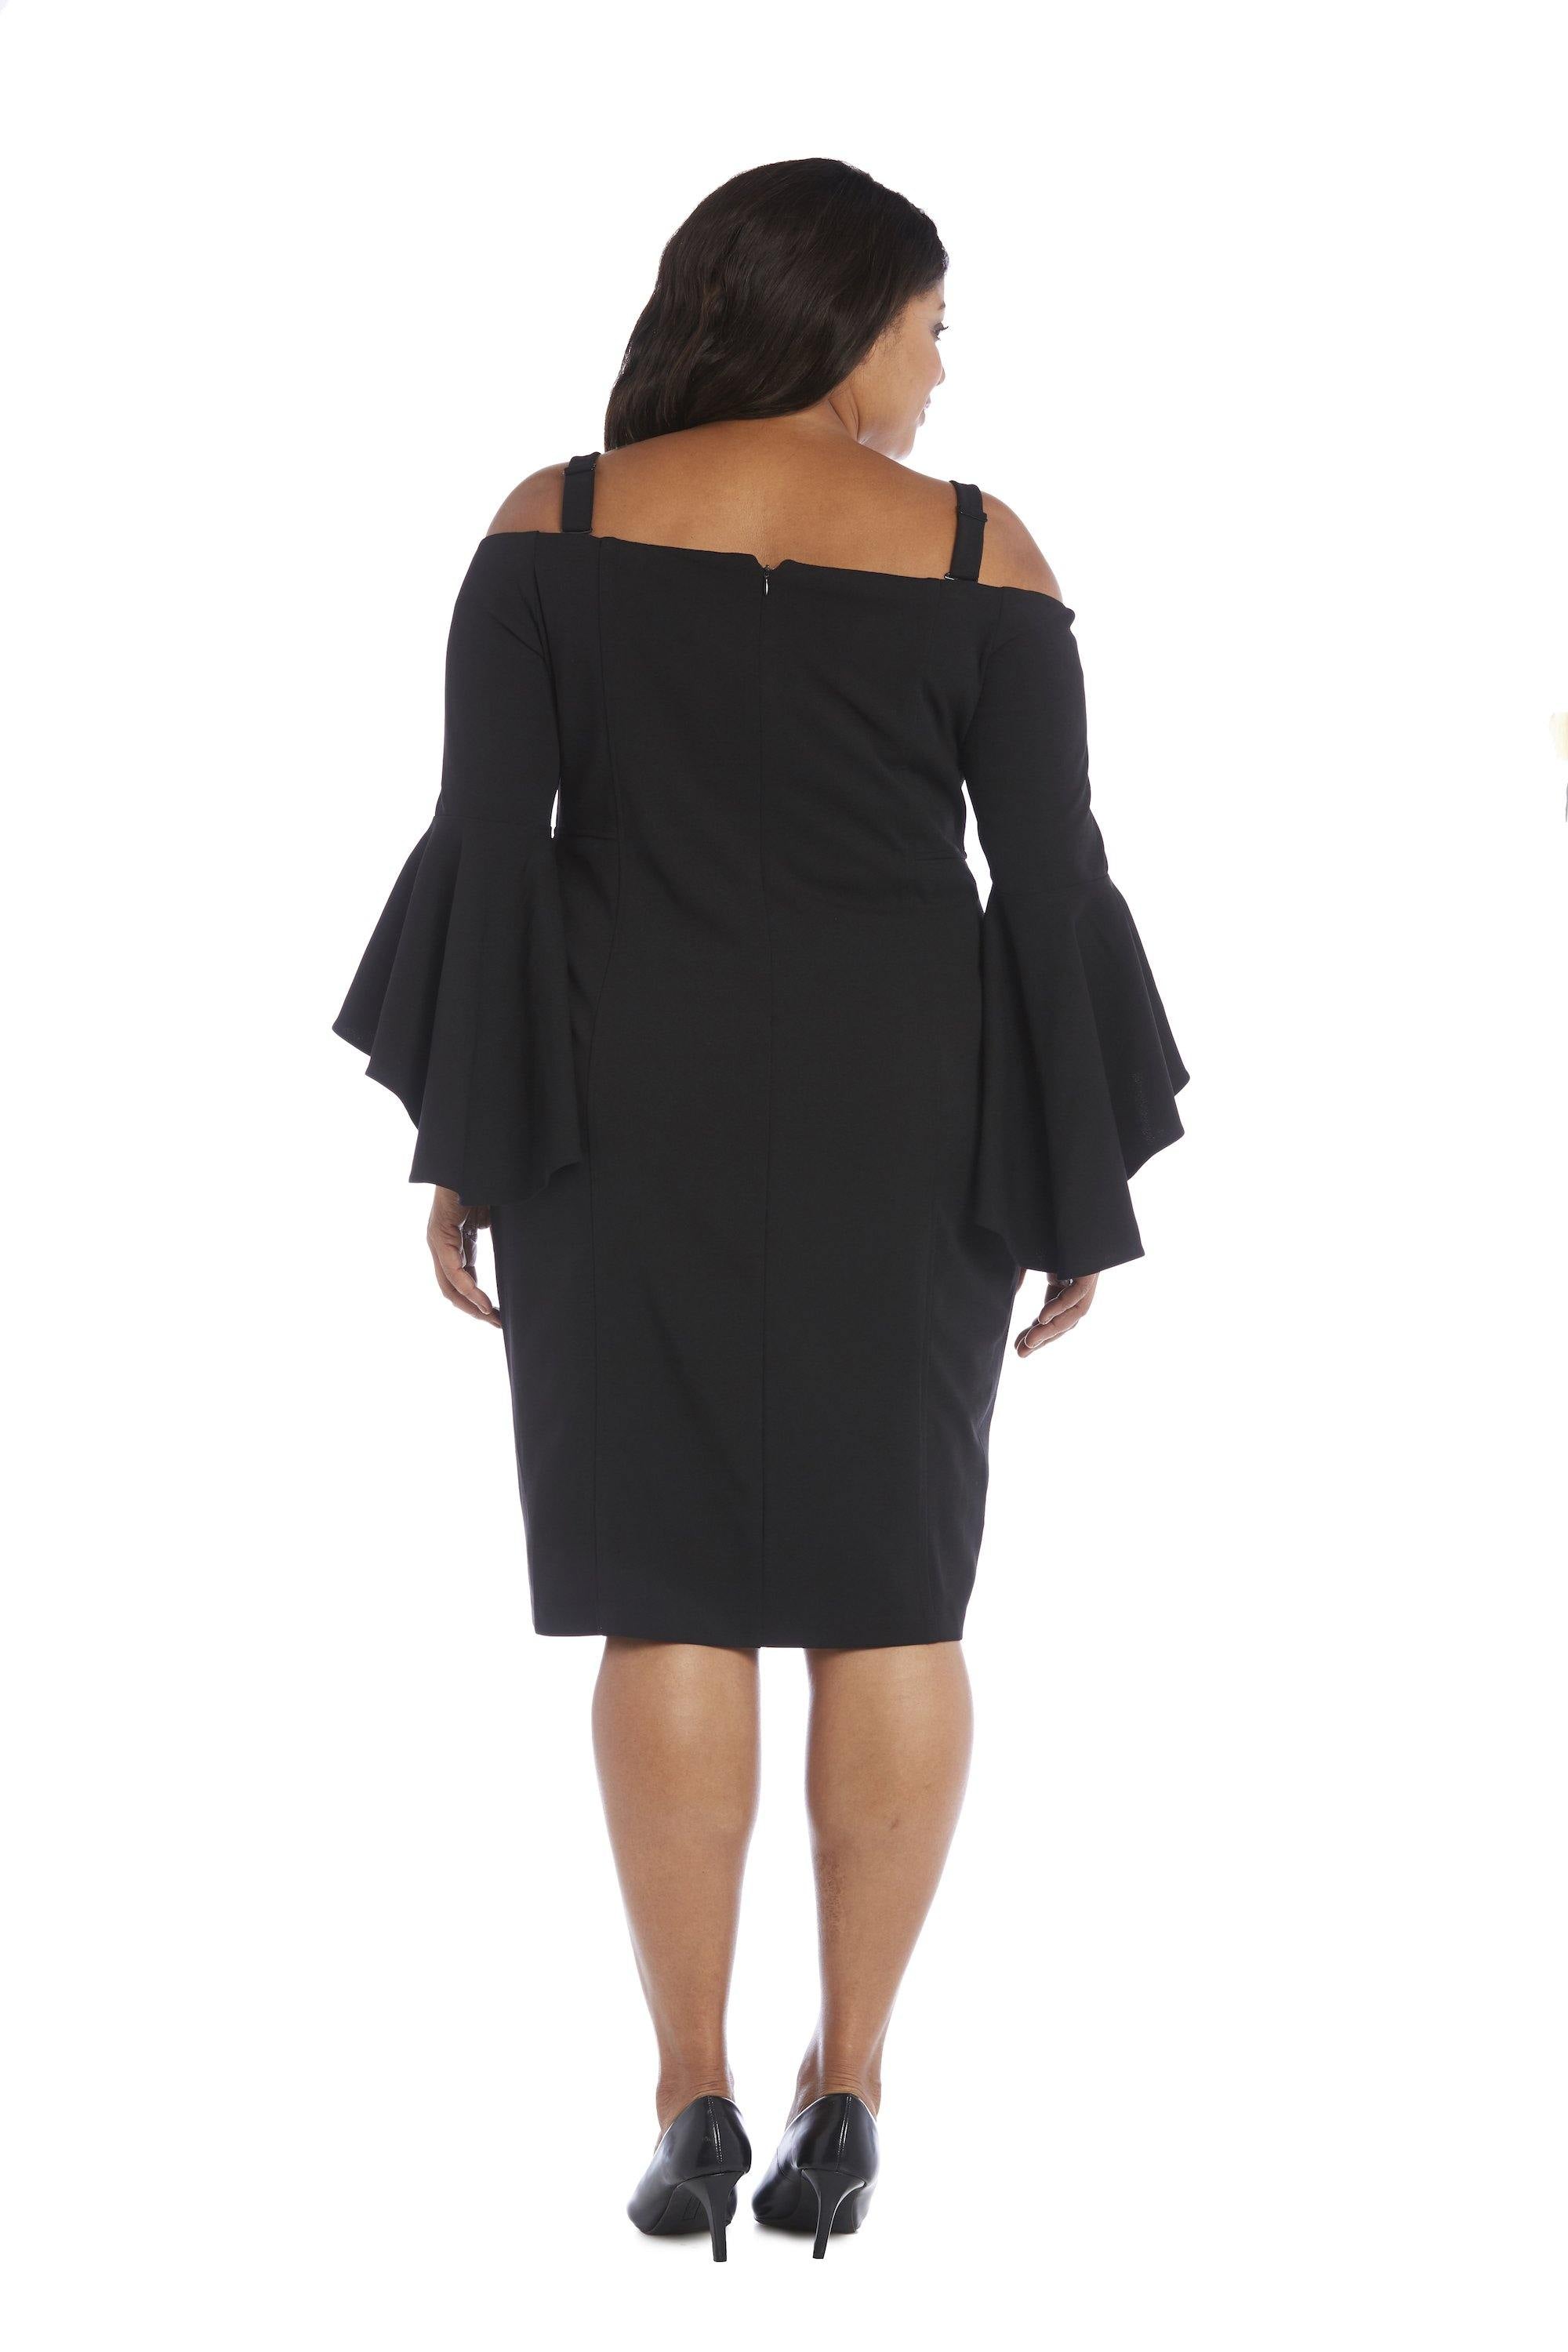 R&M Richards Short Plus Size Dress Sale - The Dress Outlet